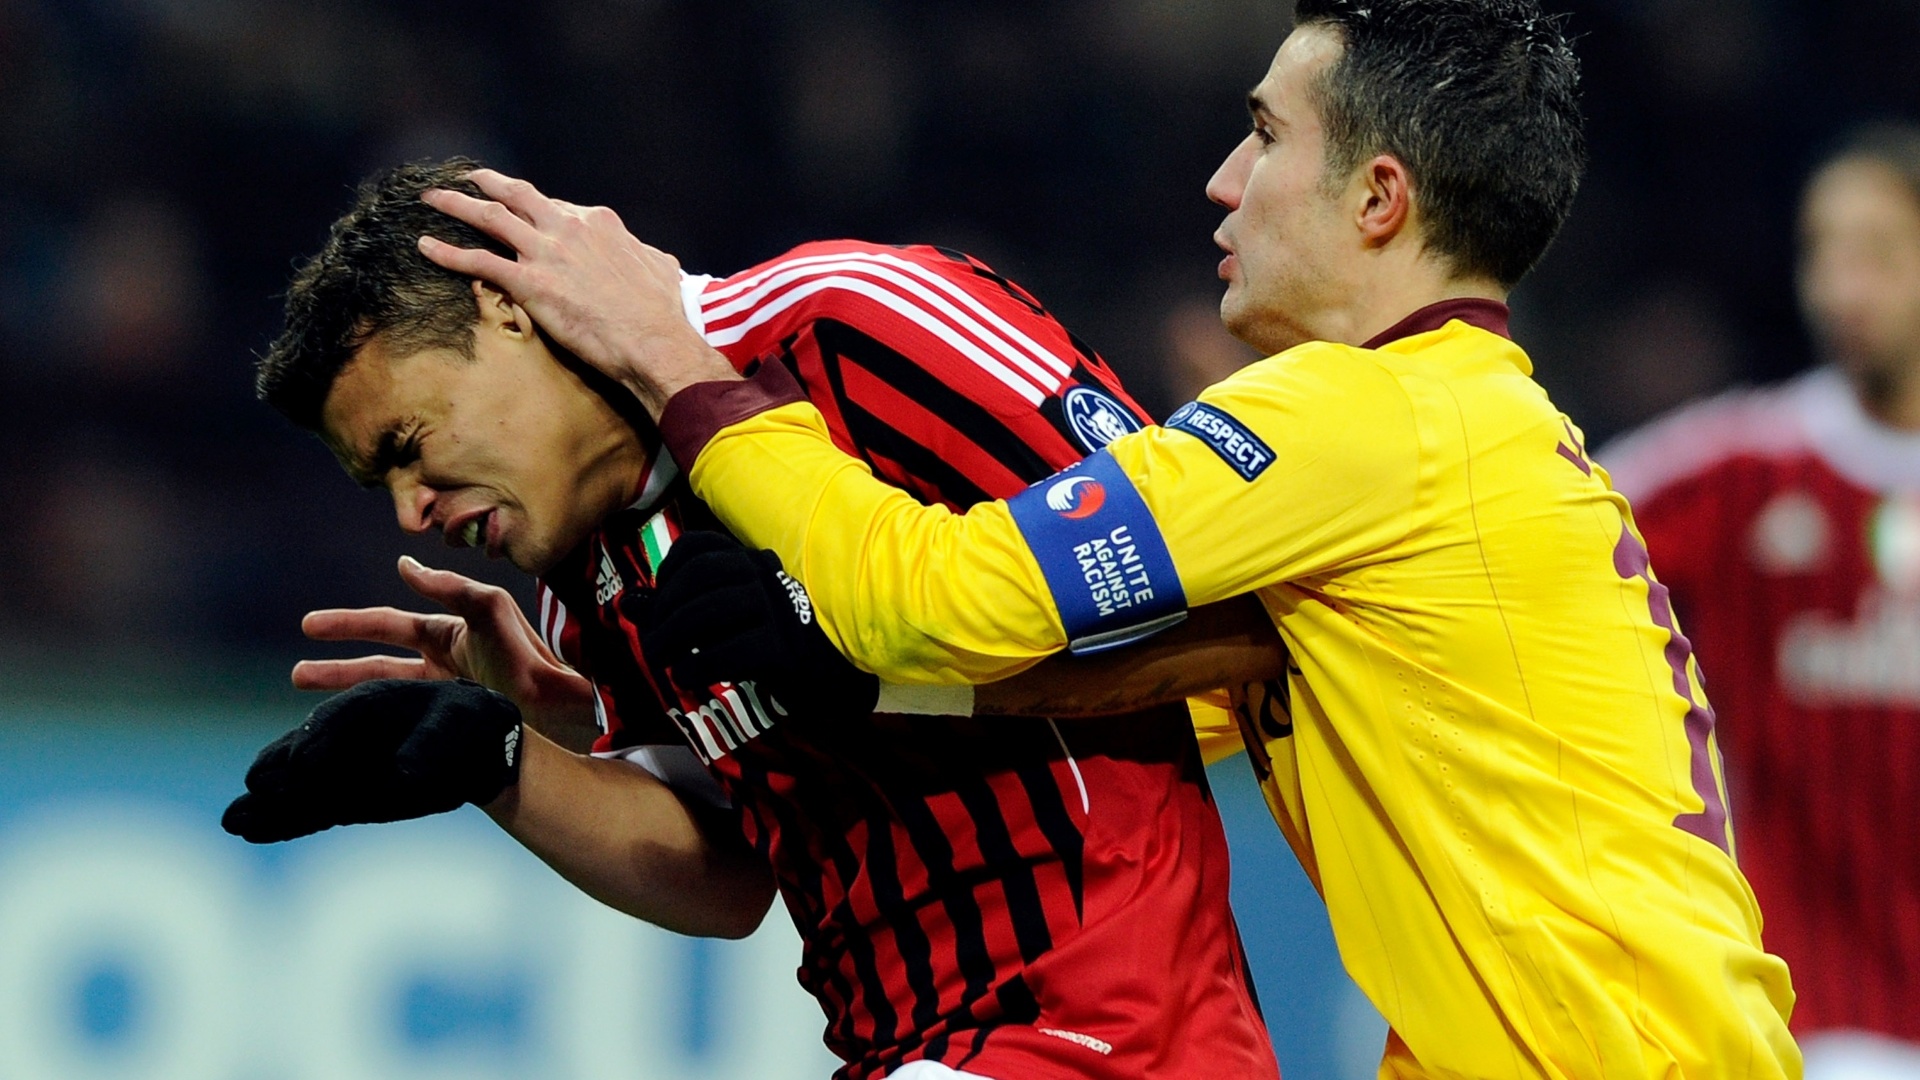 Jogada envolvendo Thiago Silva, do Milan, e Van Persie, do Arsenal, no San Siro (15/02/2012)